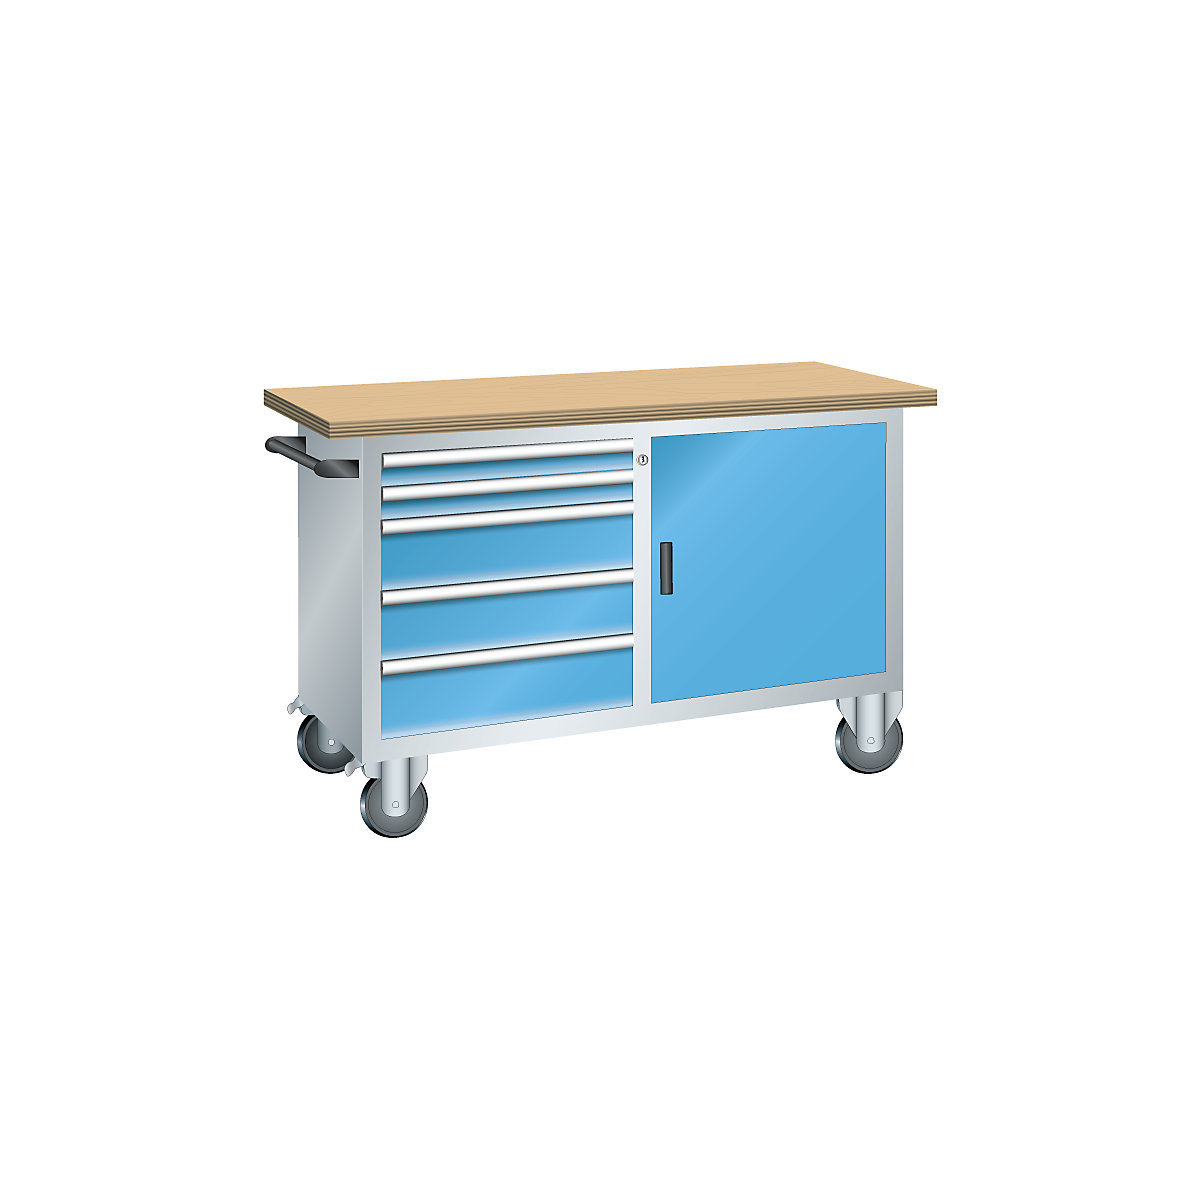 Établi compact mobile – LISTA, 6 tiroirs, 1 porte, 1 tablette, coloris corps gris clair, coloris façades bleu clair-2